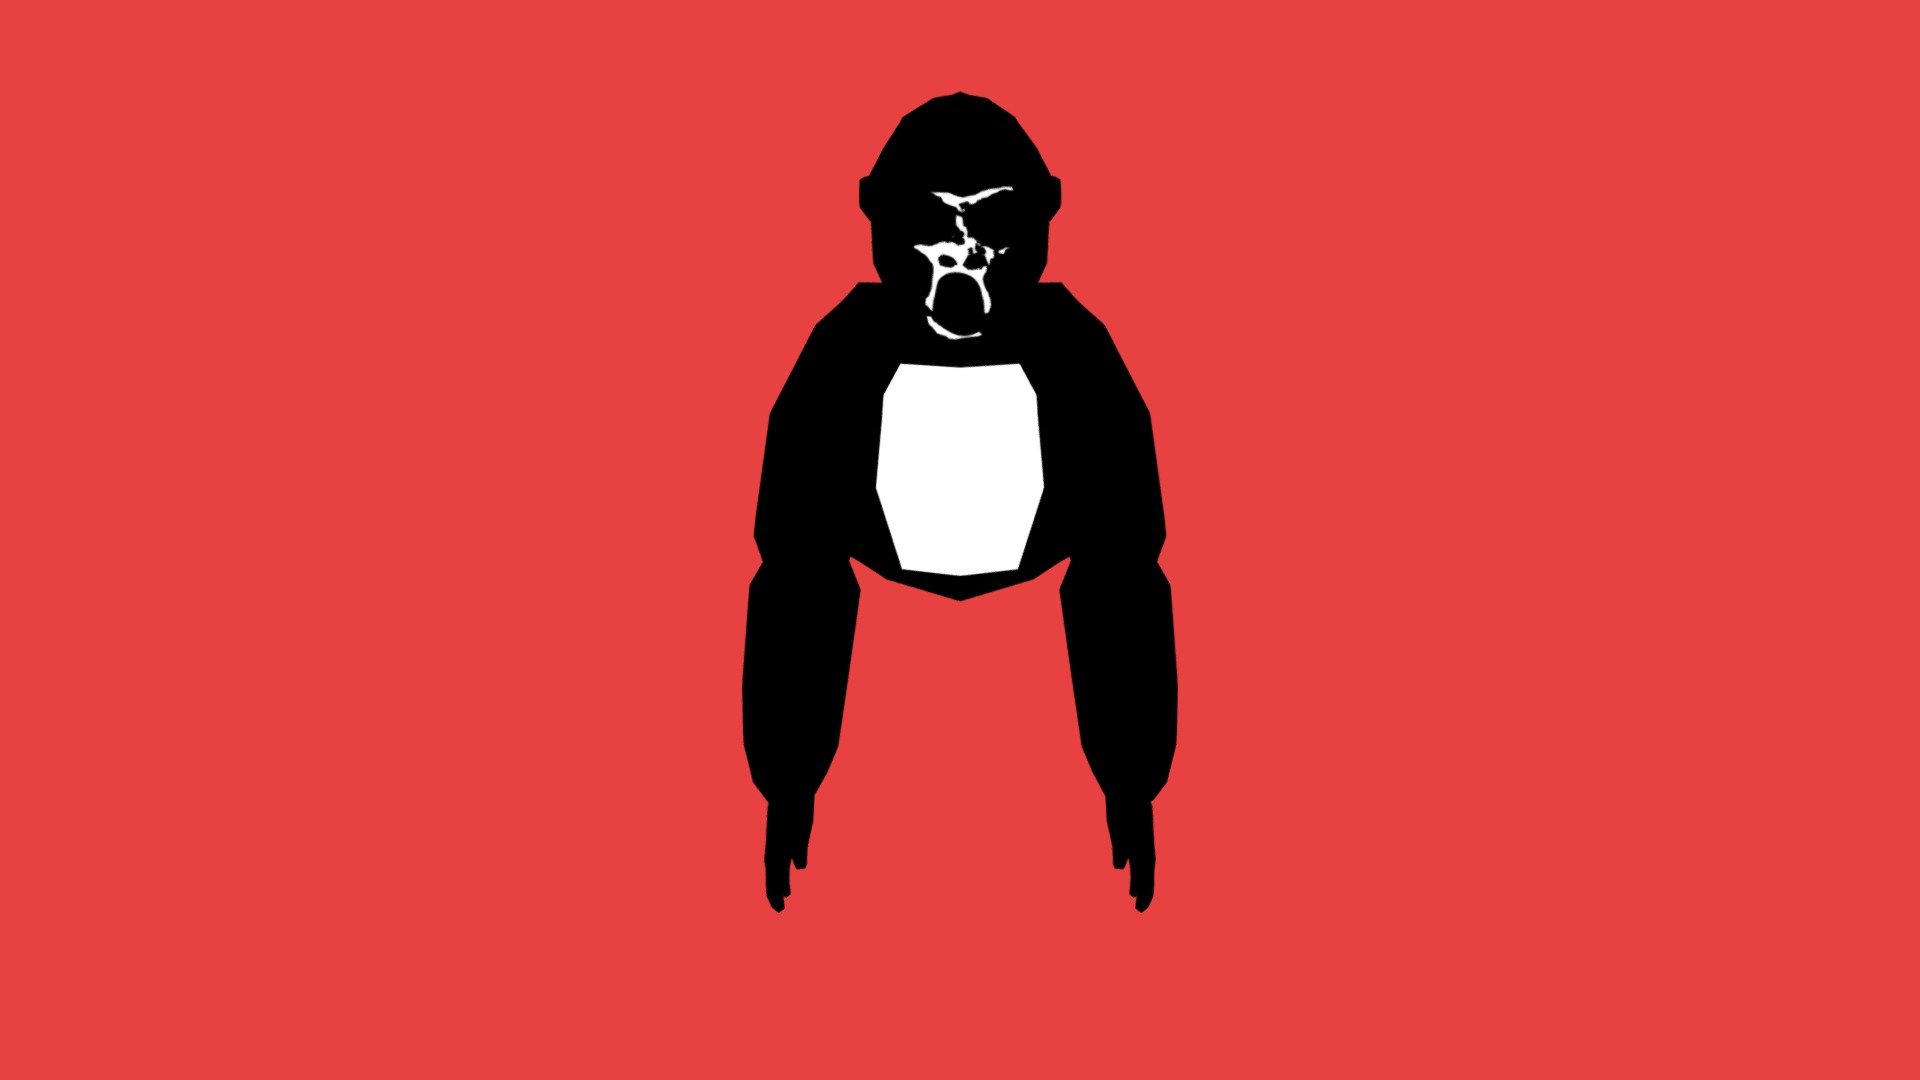 Cursed gorilla tag